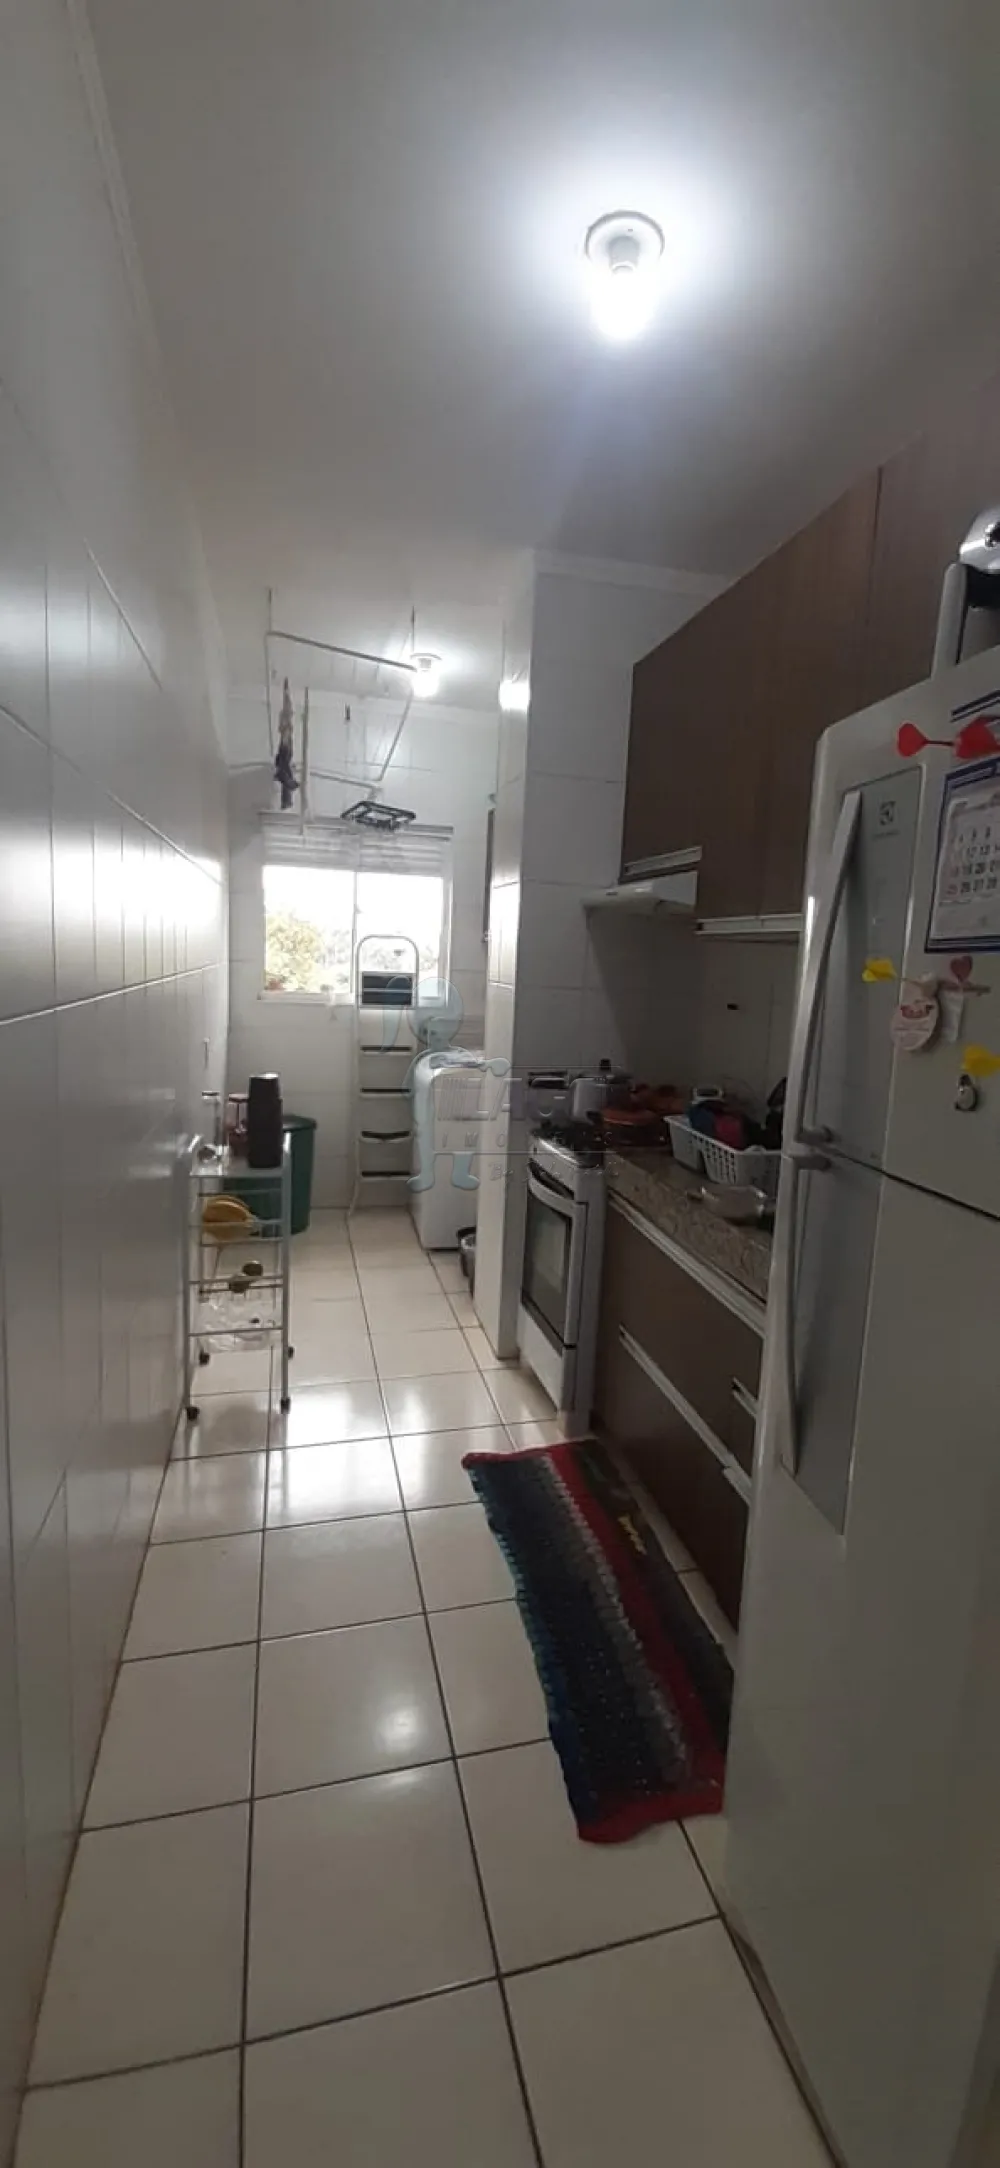 Comprar Apartamentos / Padrão em Ribeirão Preto R$ 100.000,00 - Foto 1